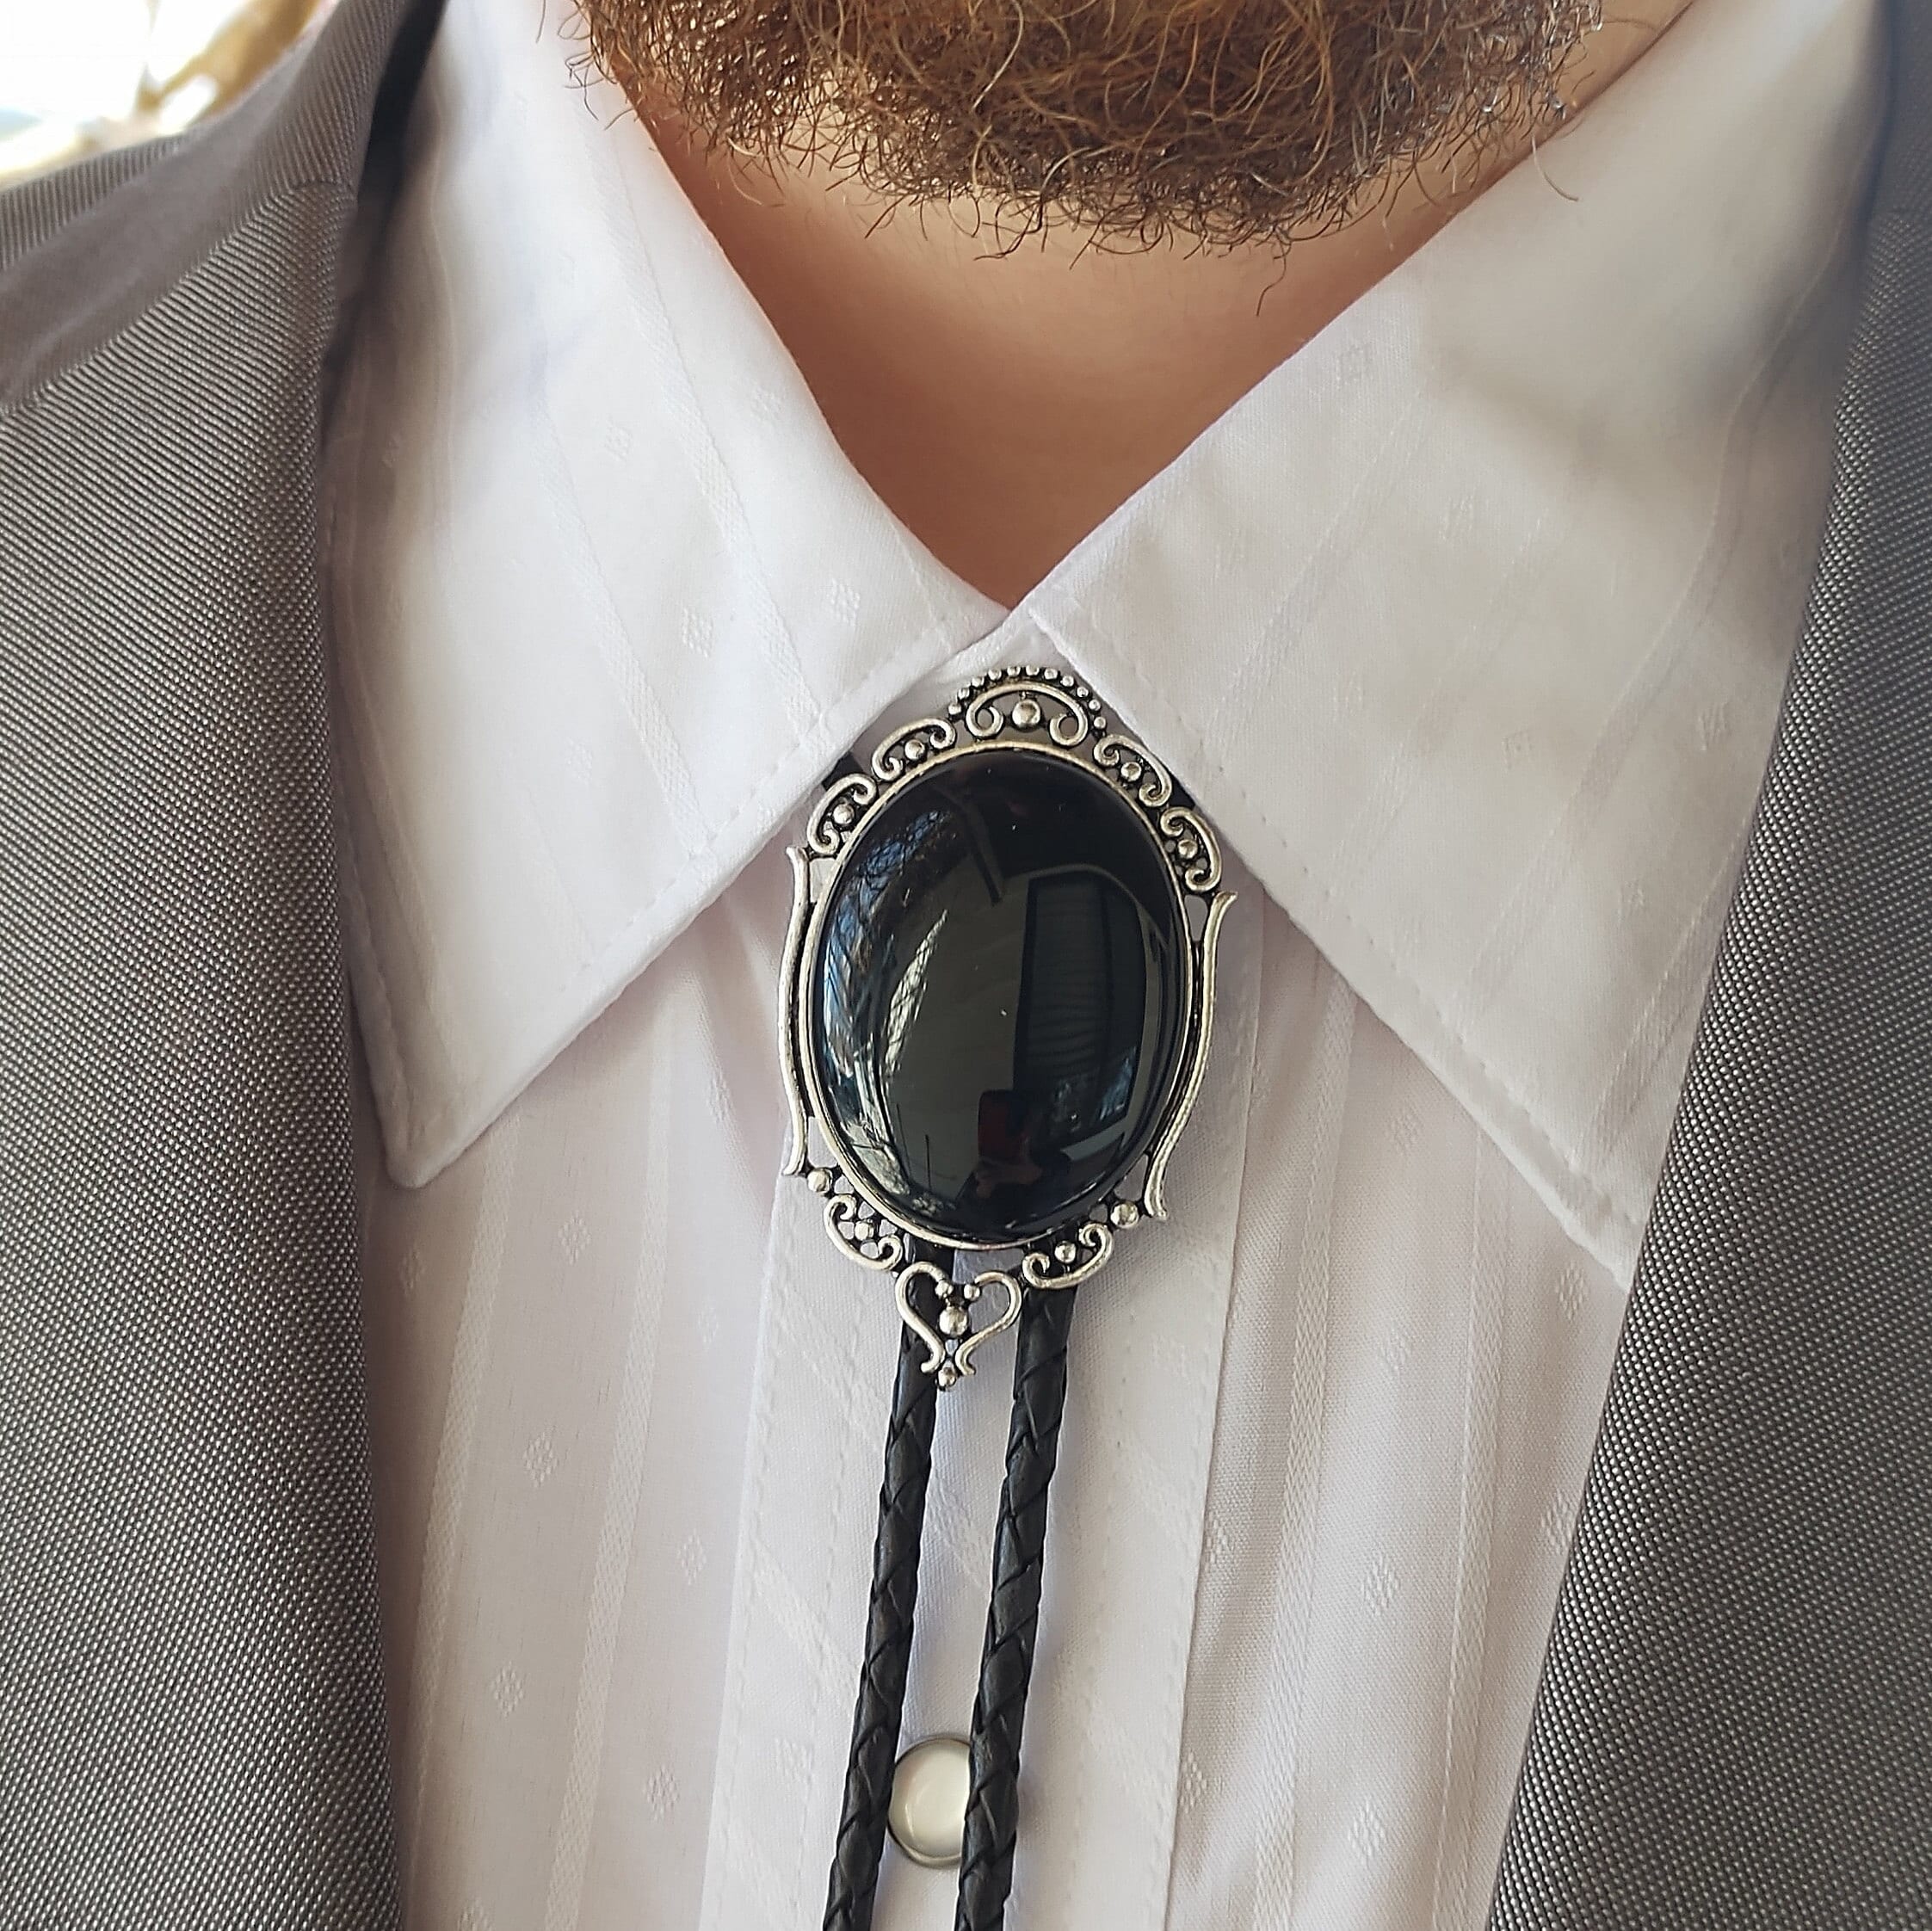 M And F Men's Leatherette Bolo Tie - Black/Silver 2123847